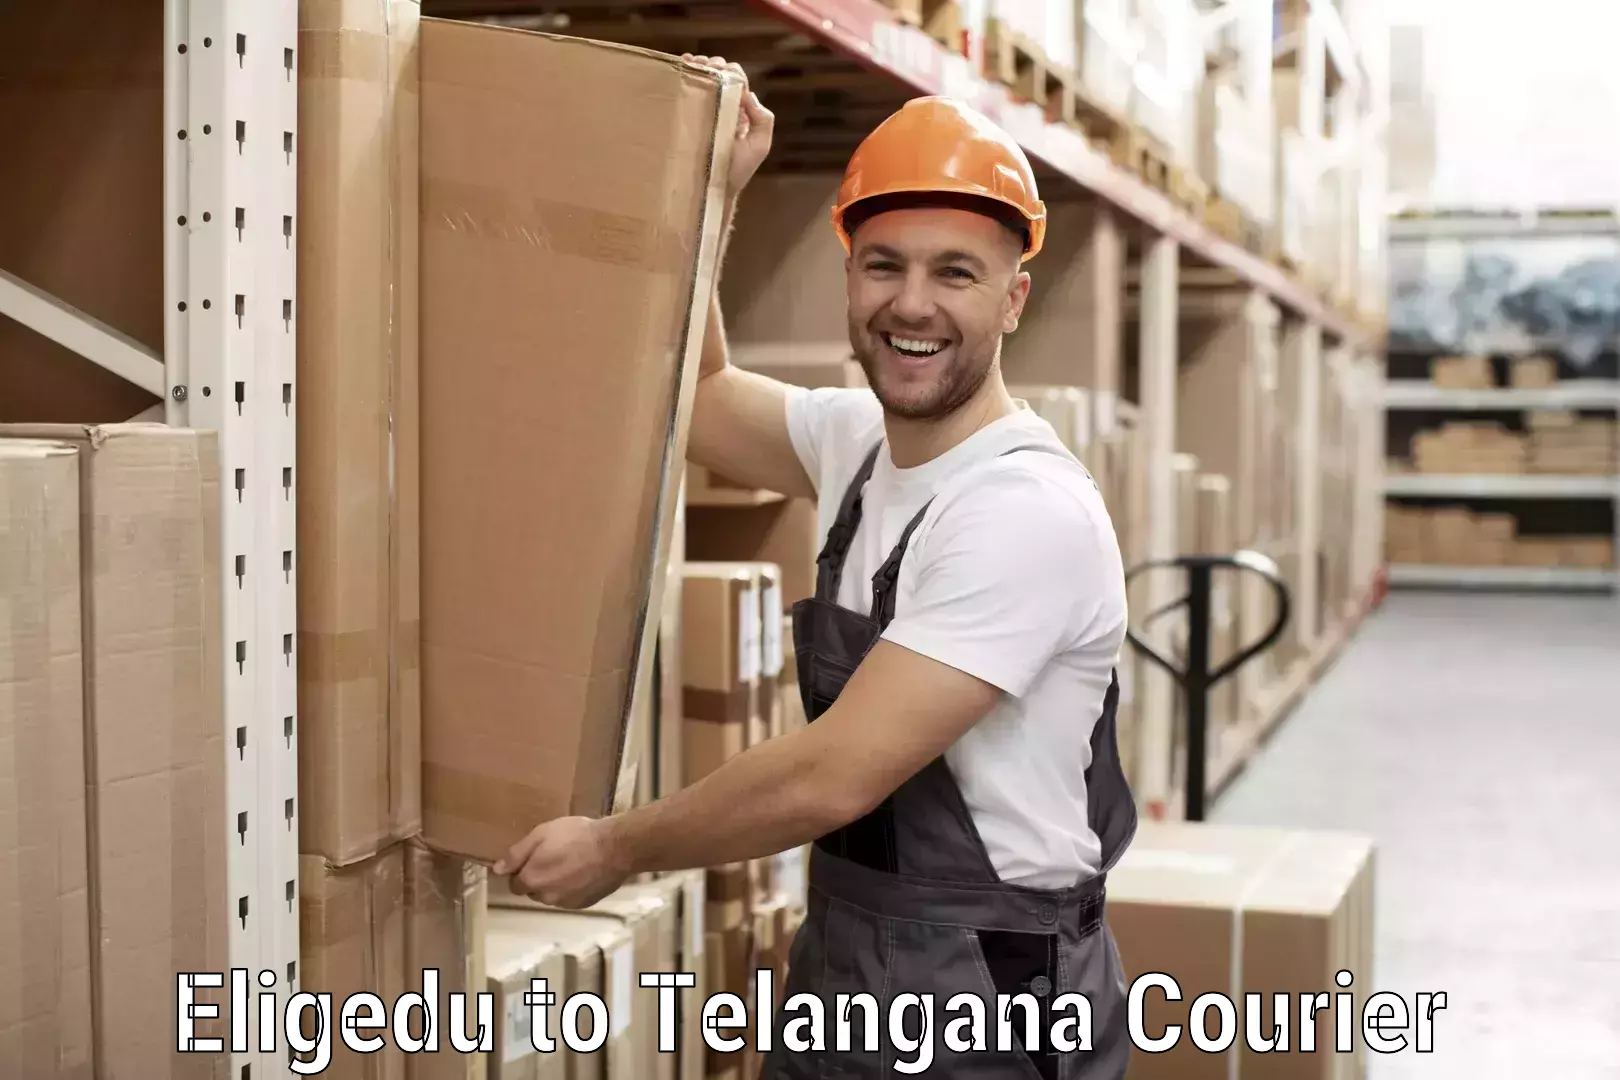 Next-generation courier services Eligedu to Chegunta